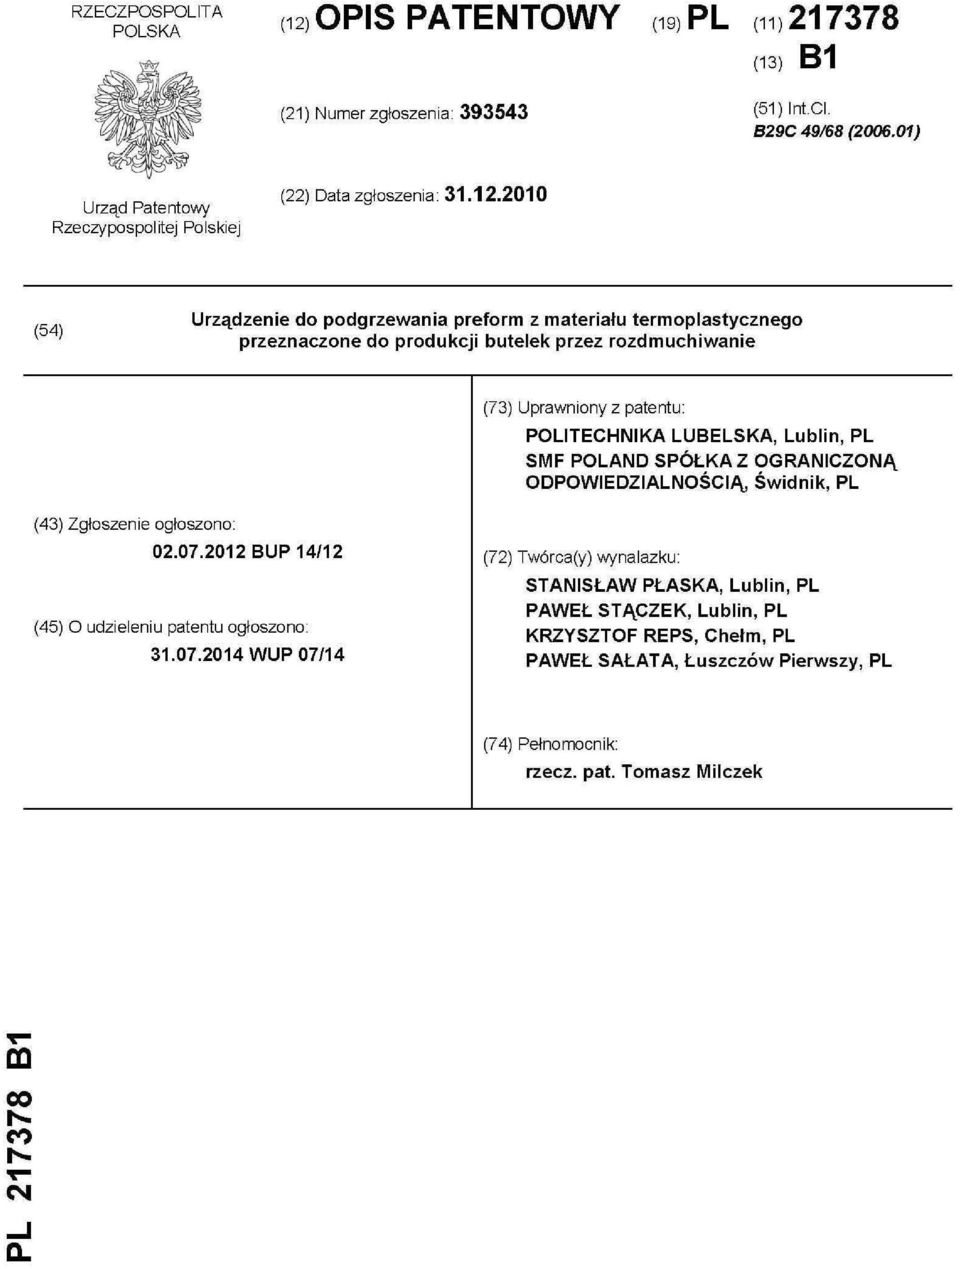 2010 (54) Urządzenie do podgrzewania preform z materiału termoplastycznego przeznaczone do produkcji butelek przez rozdmuchiwanie (73) Uprawniony z patentu PLITECHNIKA LUBELSKA,